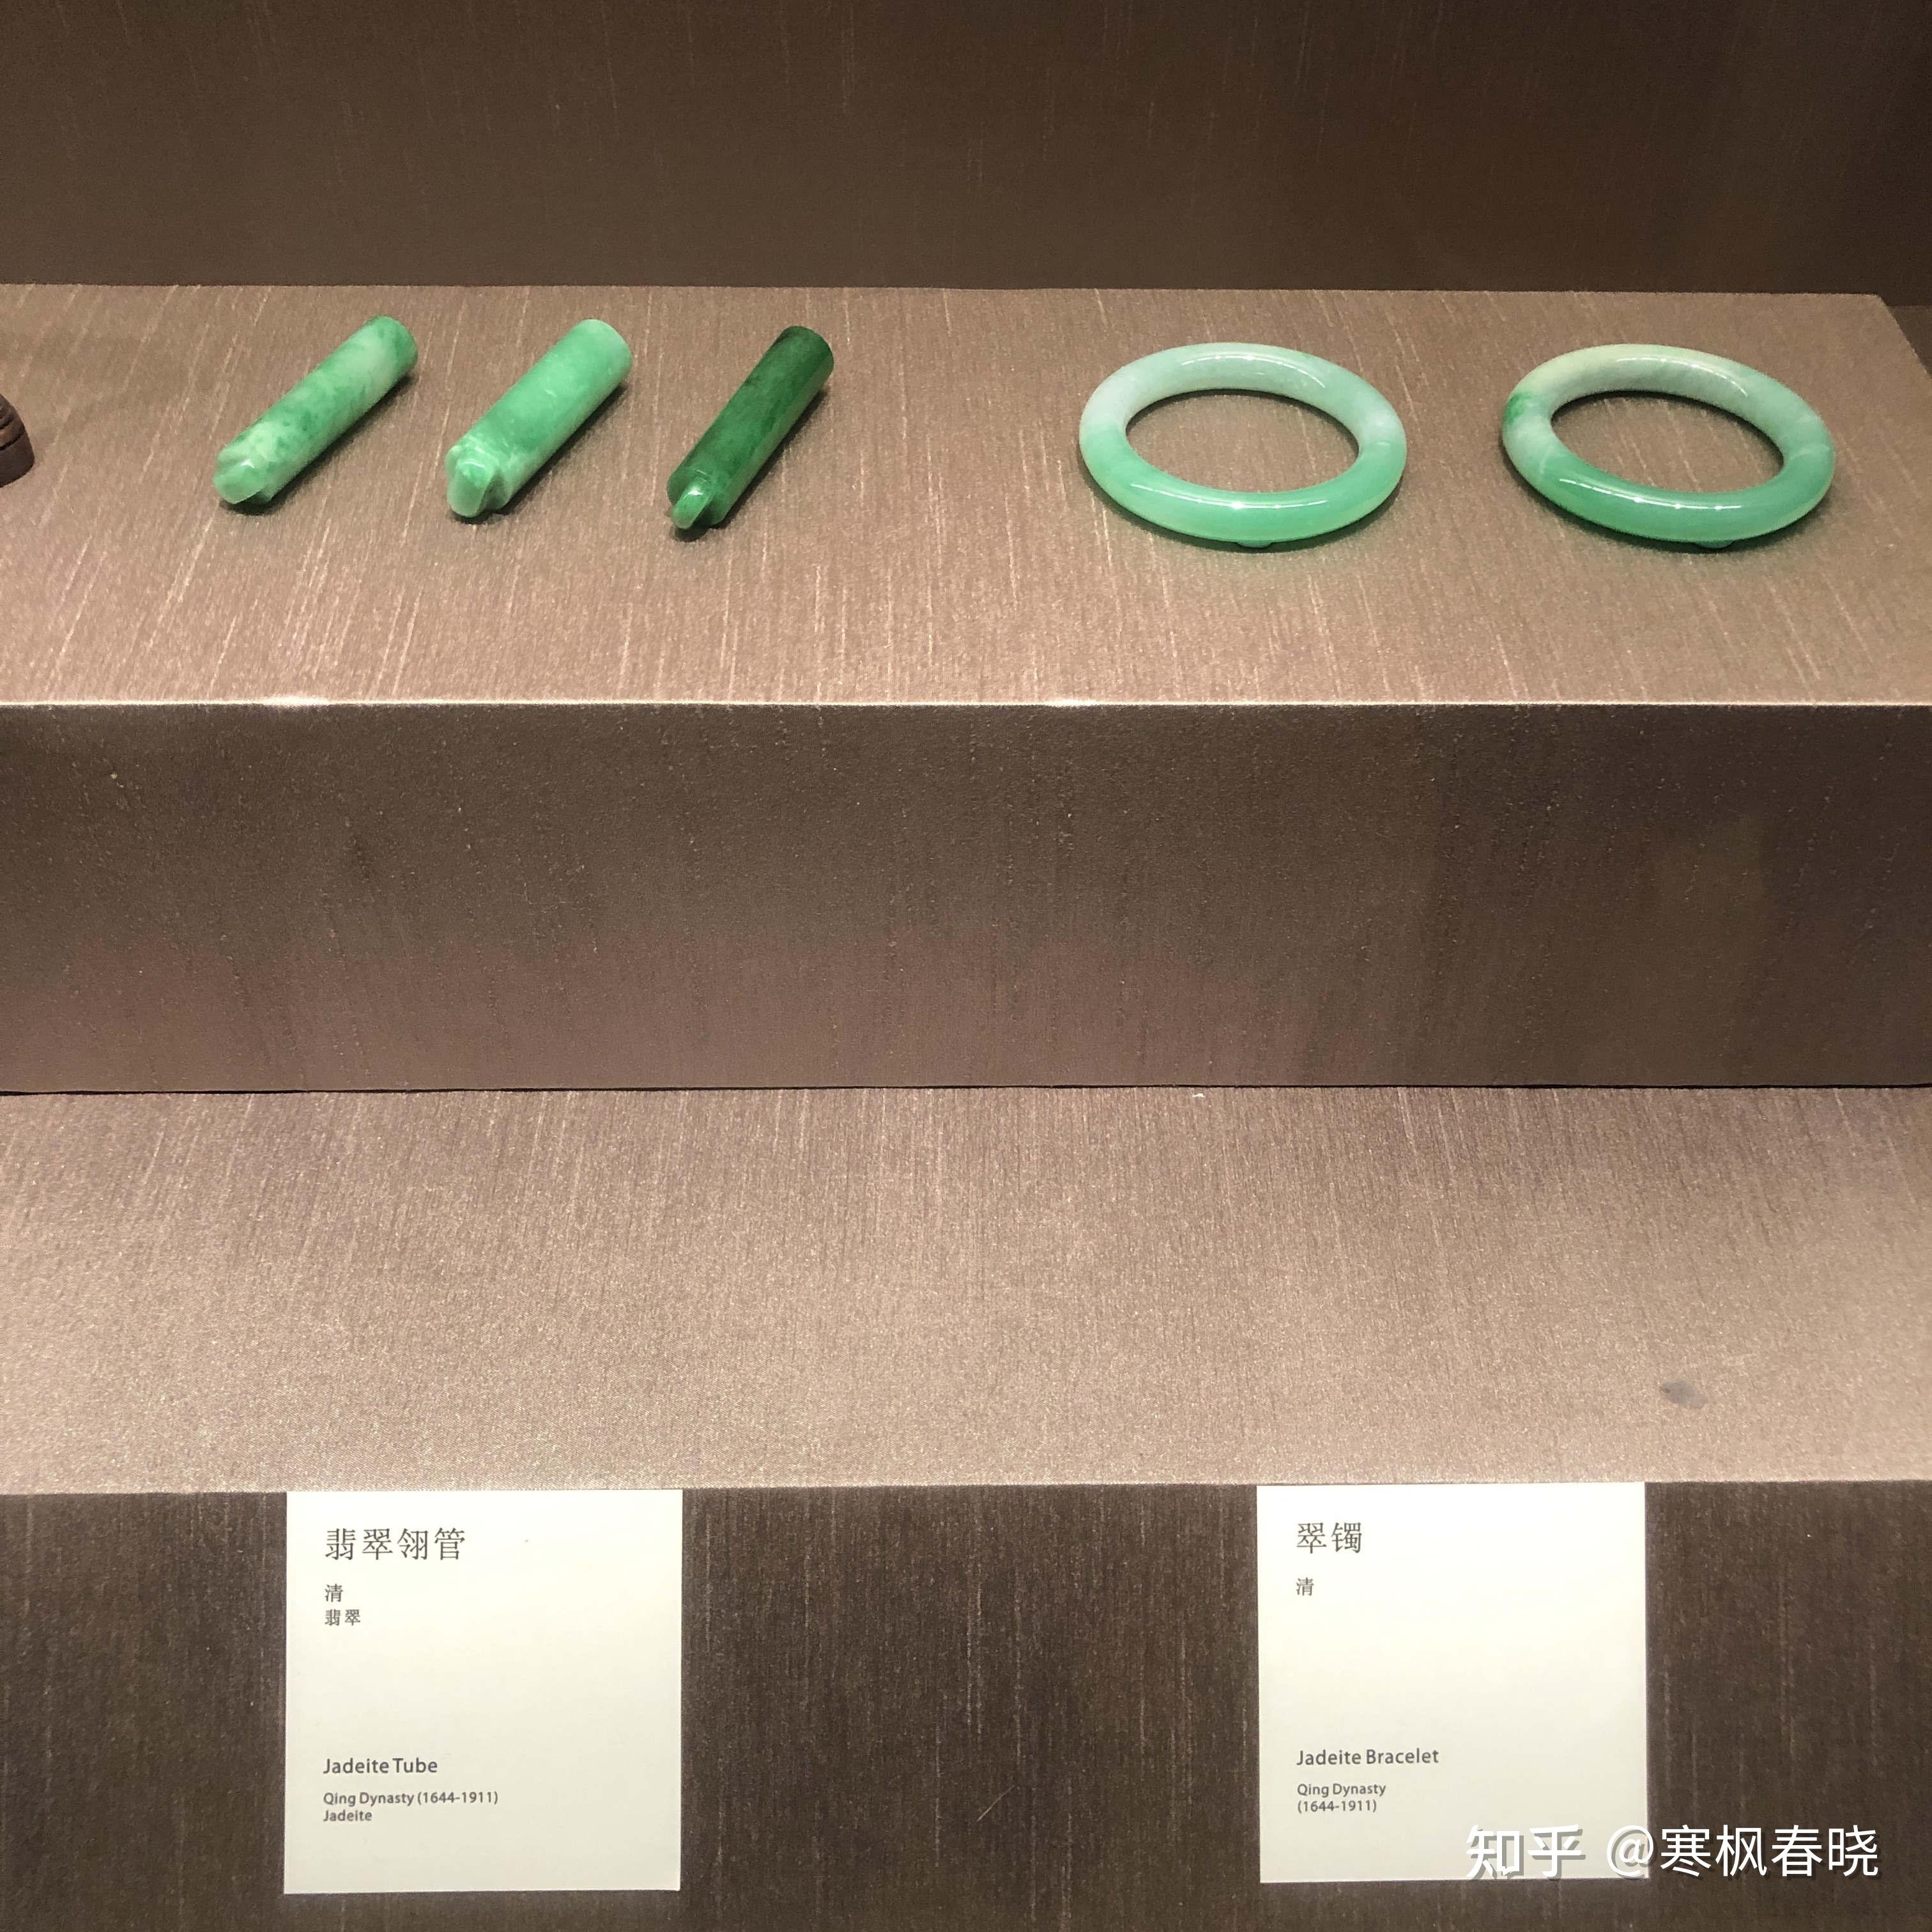 总结:苏州博物馆的外观设计一流;展品展陈中规中矩,就是有一些细节